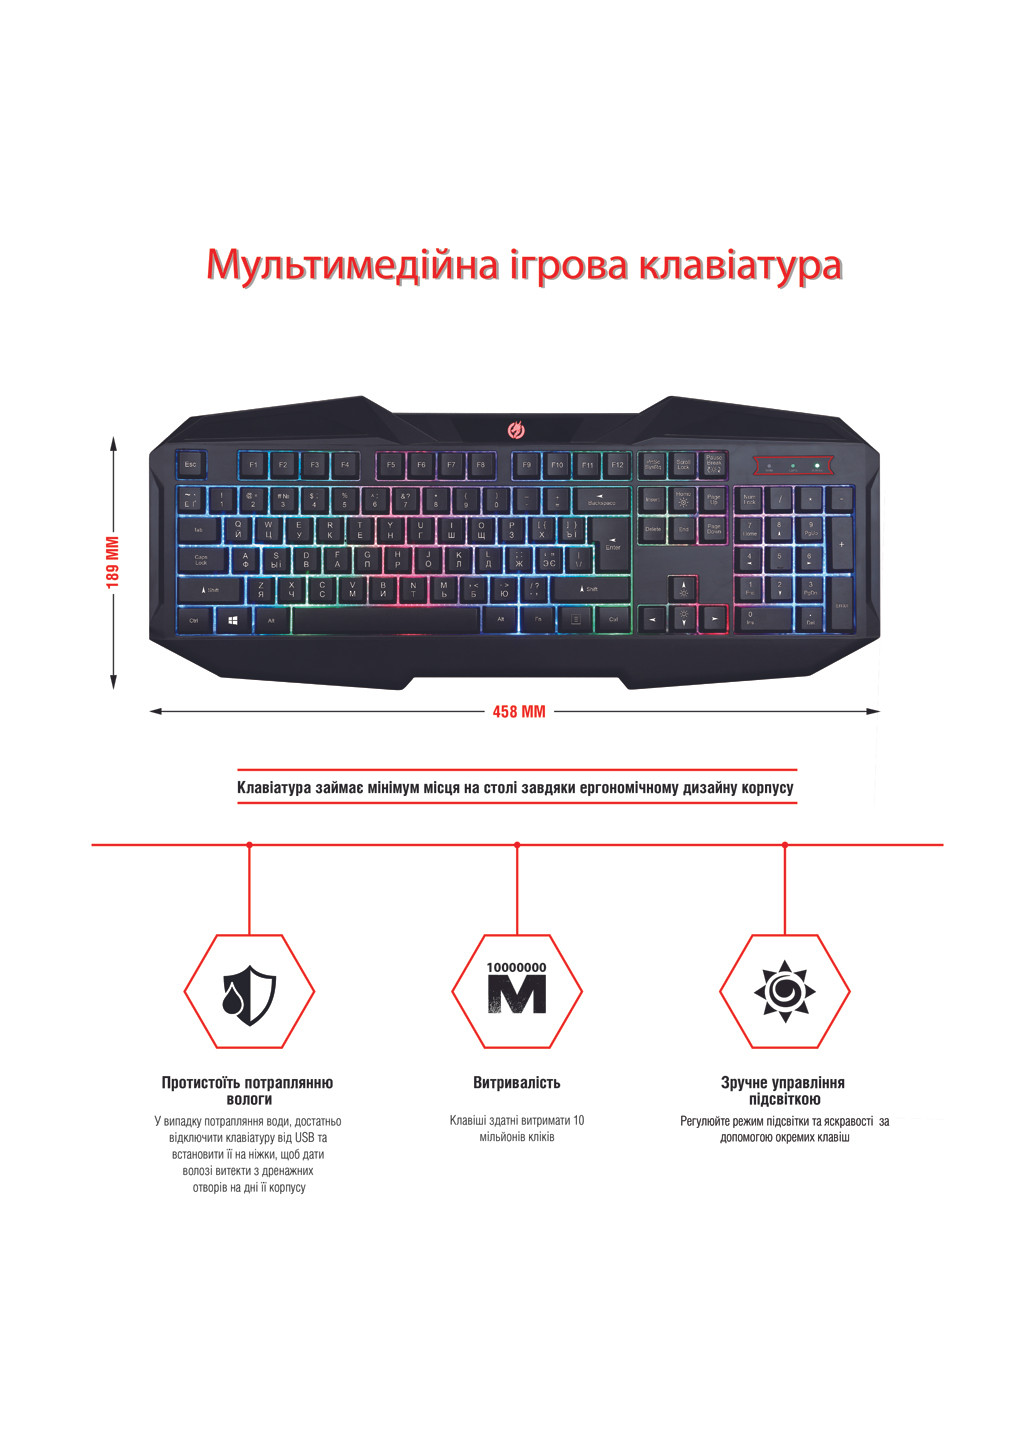 Комплект ігрової GX100 (Клавіатура, миша, гарнітура, килимок) Piko piko gx100 (130510416)